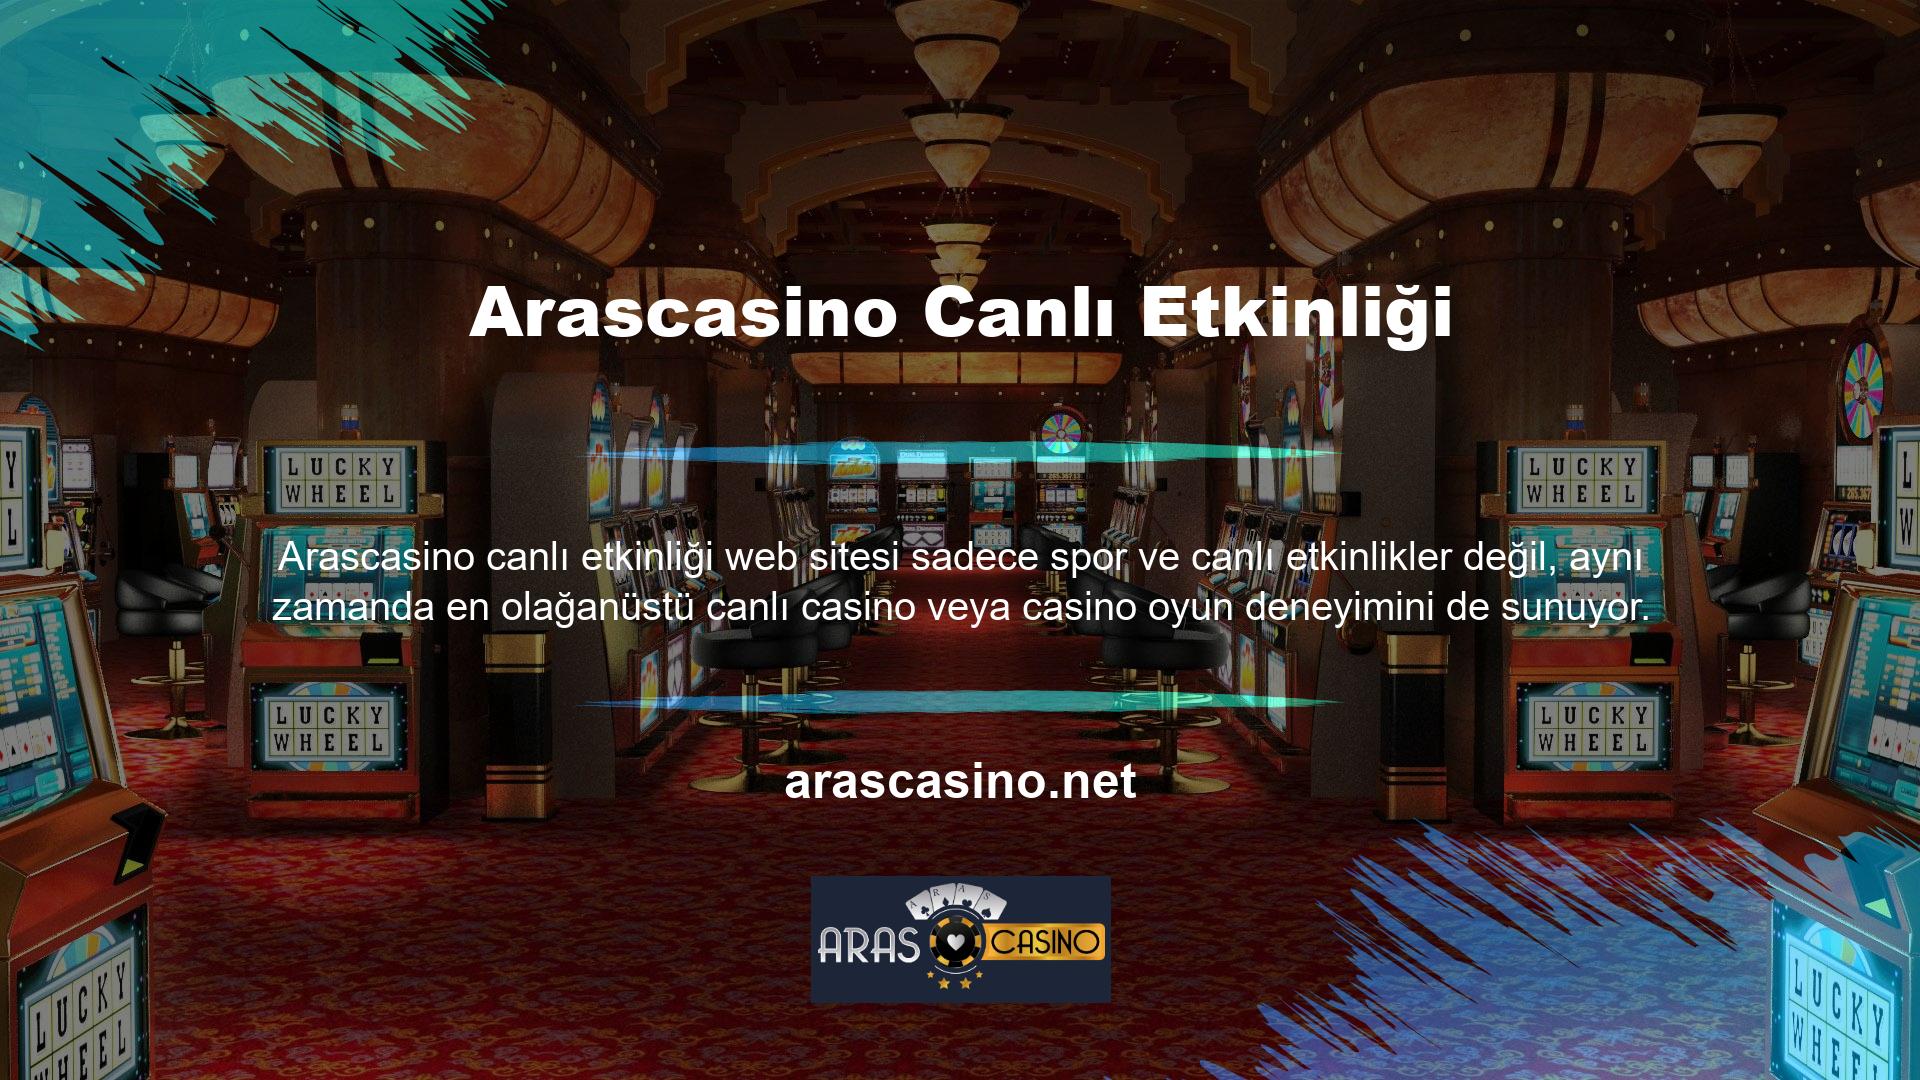 Kullanıcılarına mümkün olan en iyi deneyimi sunmak için sürekli çaba gösteren Arascasino web sitesine katılın